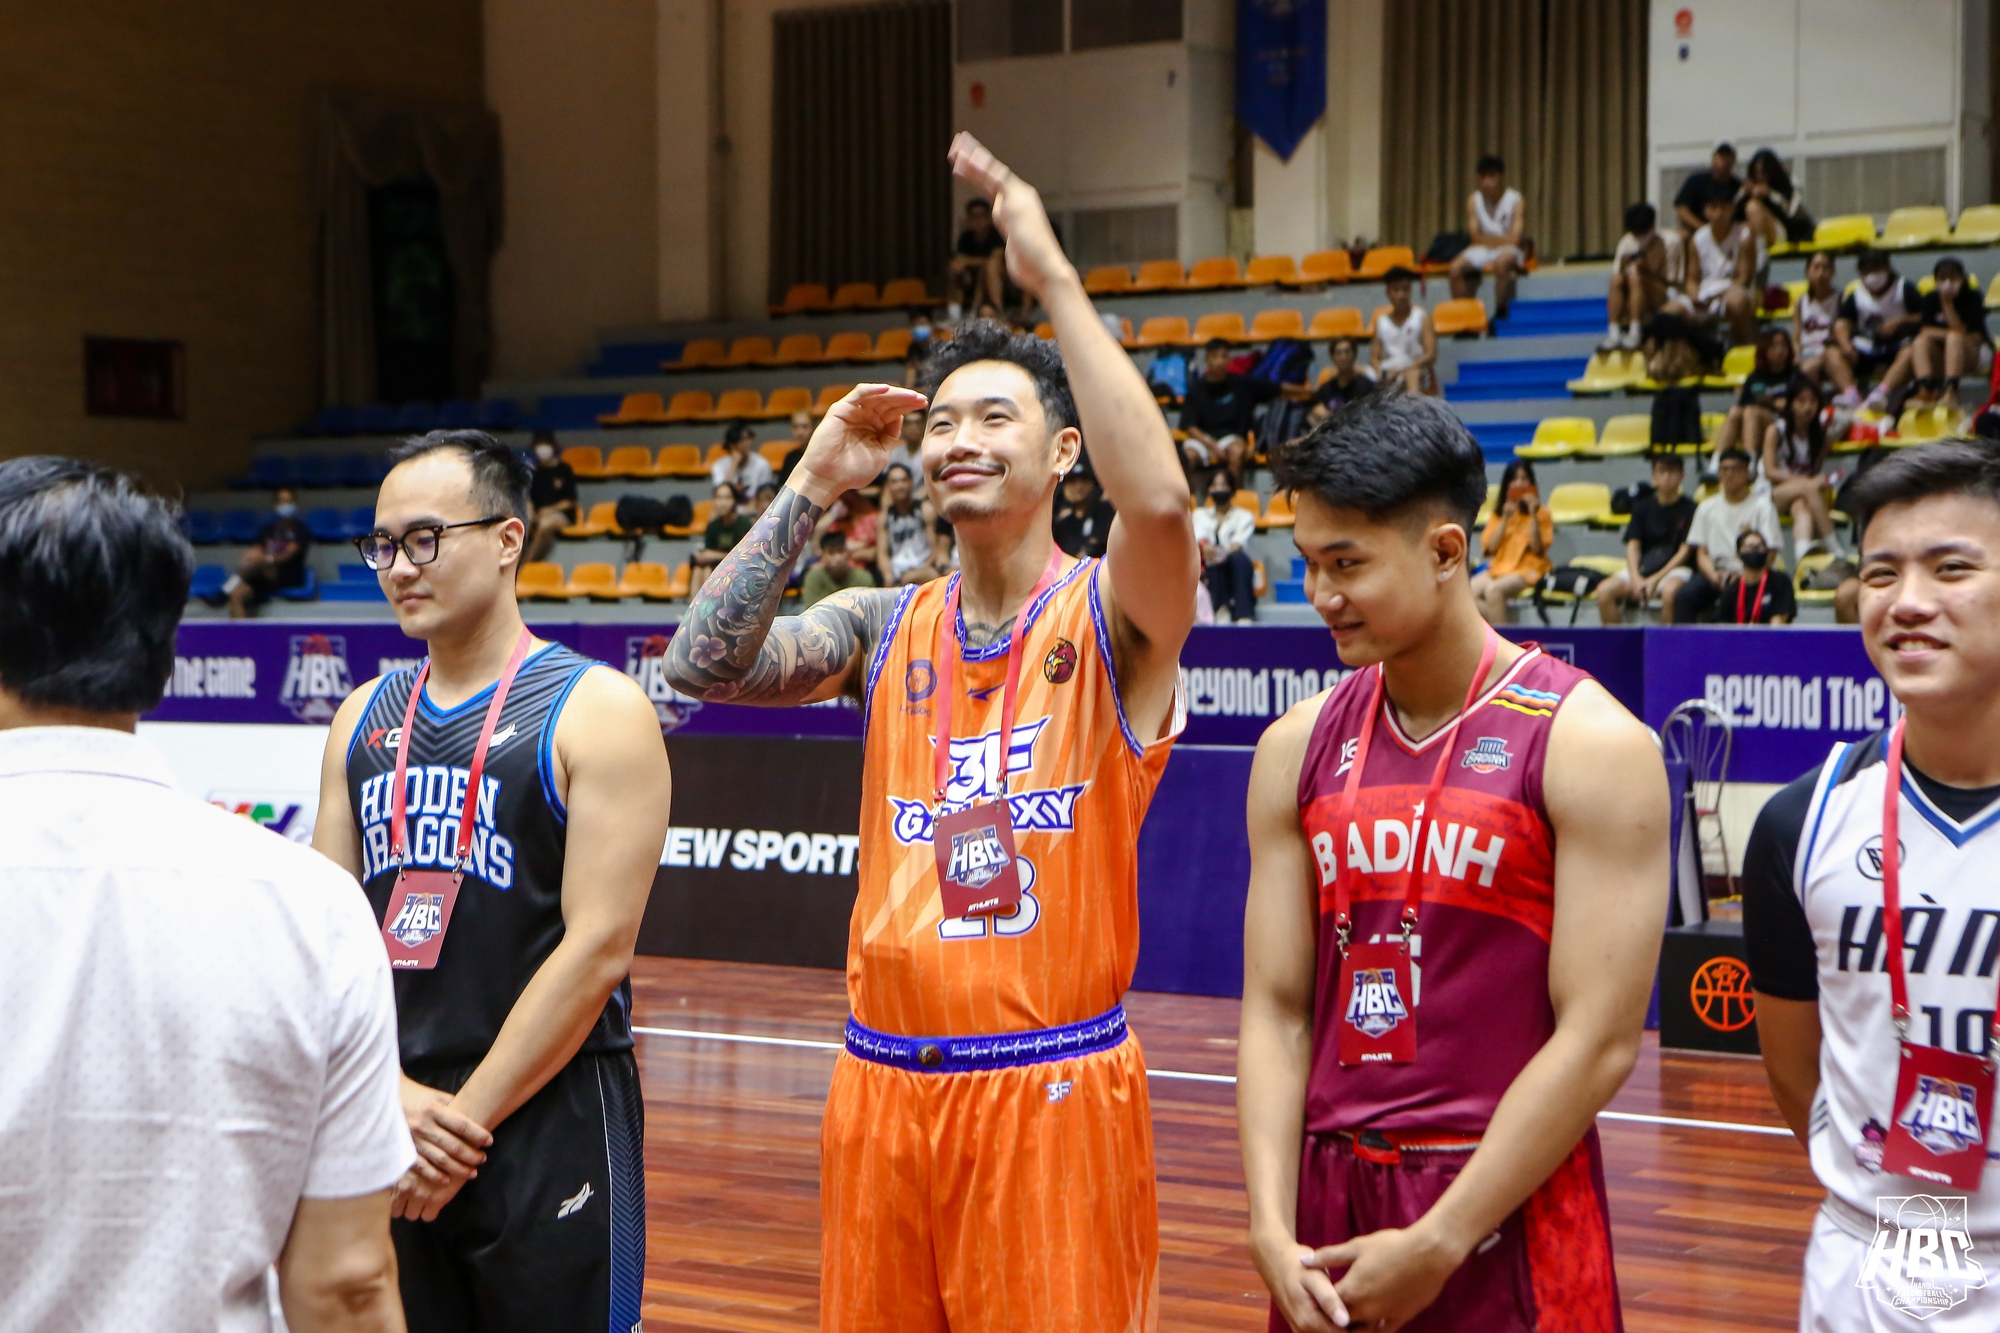 HBC 2022 ra mắt hoành tráng với người hâm mộ bóng rổ Hà Nội - Ảnh 2.